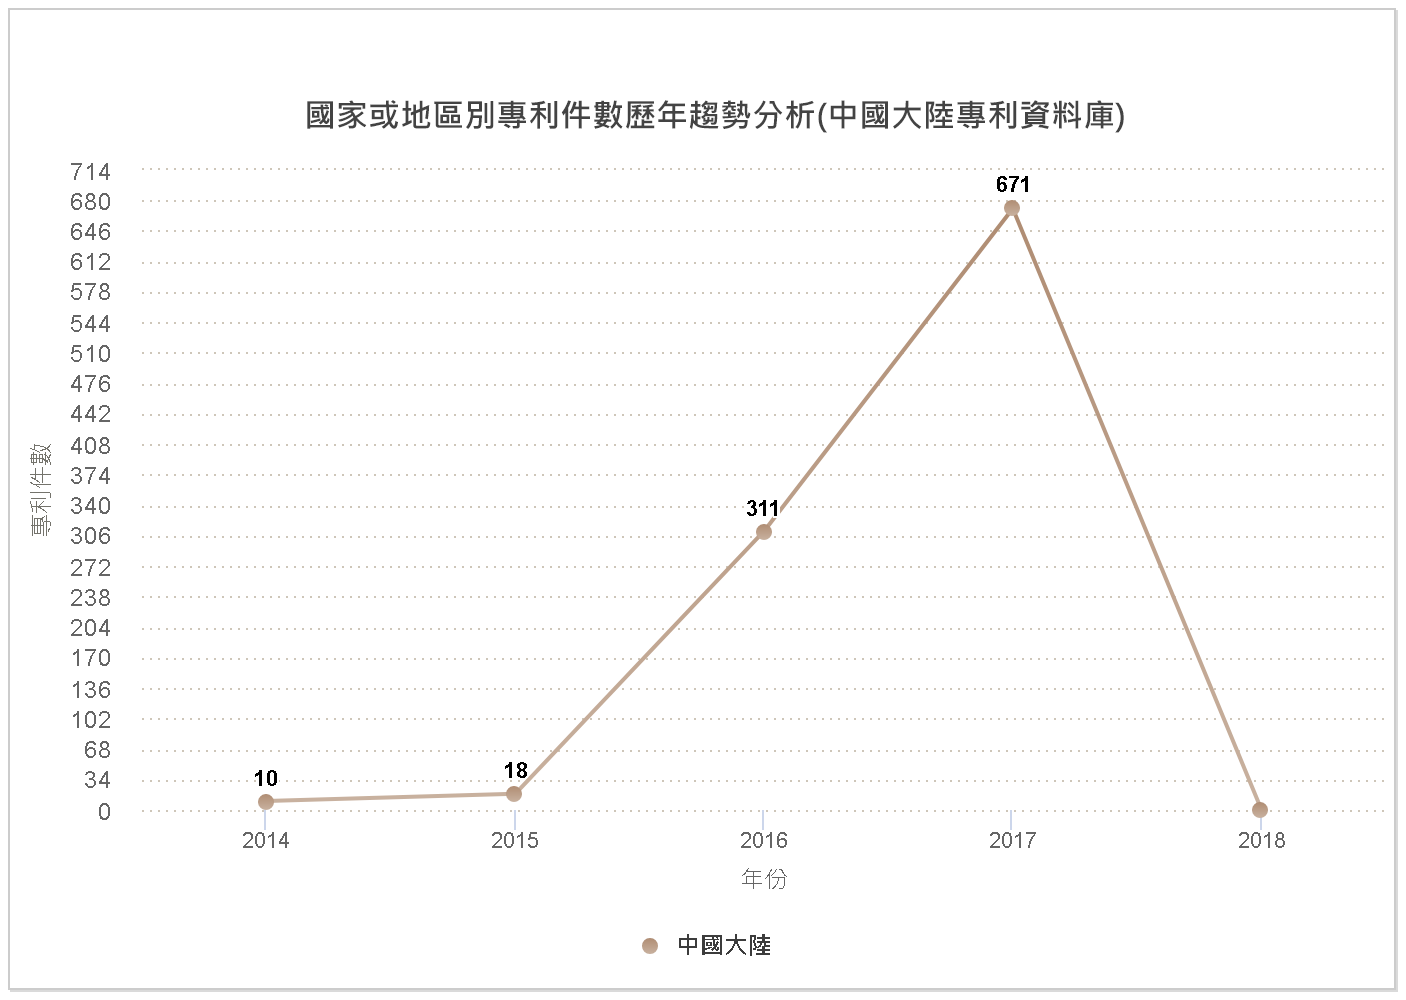 國家或地區別專利件數歷年趨勢分析圖(中國大陸專利資料庫)